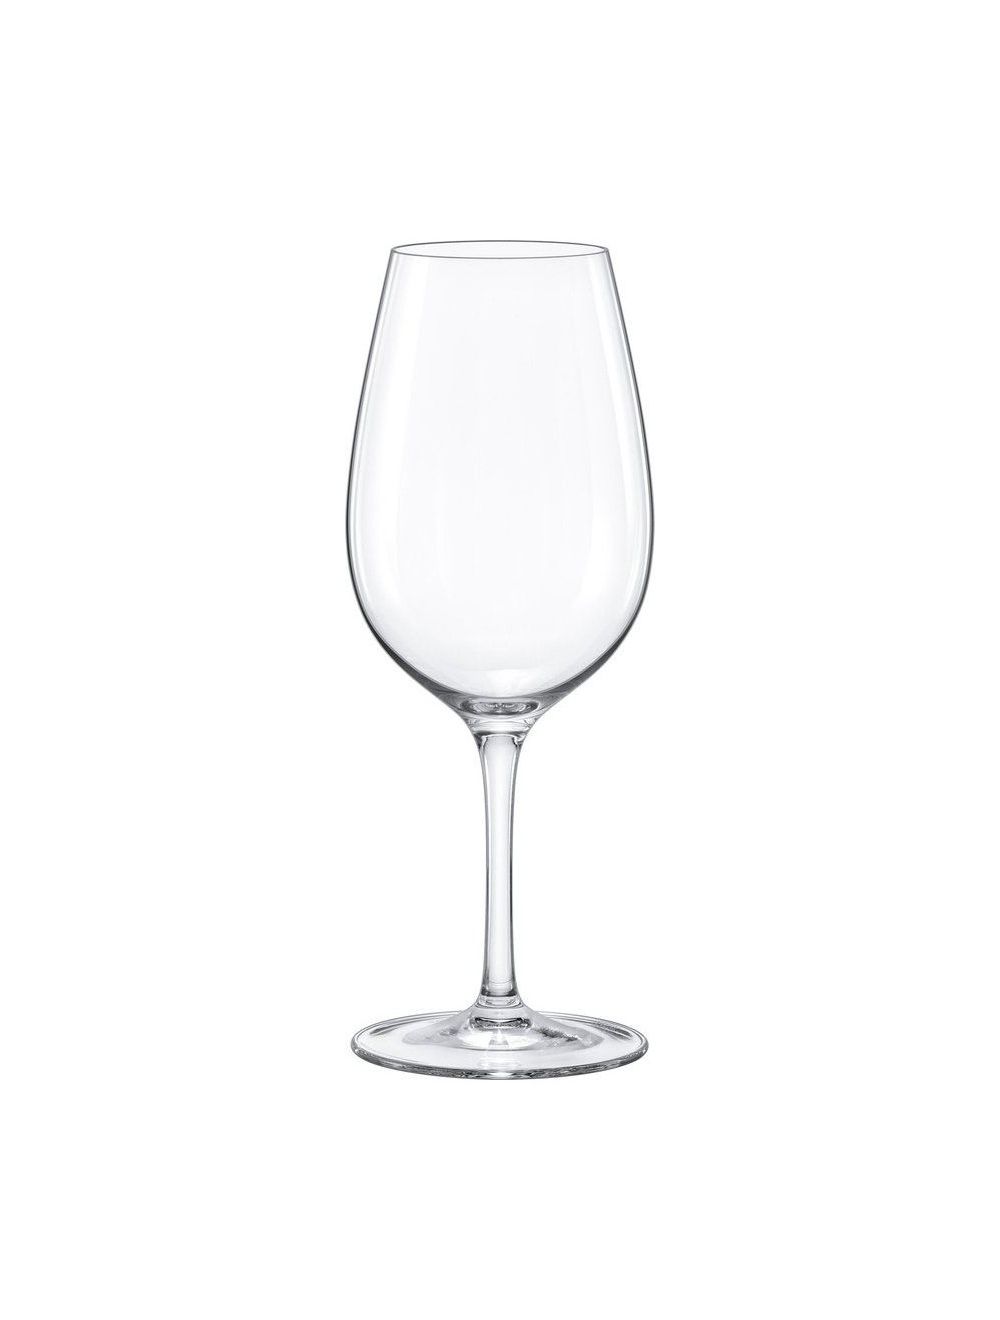 6x45 cl Rona Ratio wijnglas | Ons favoriete wijnglas Ratio | Wijnexpert wijnglazen